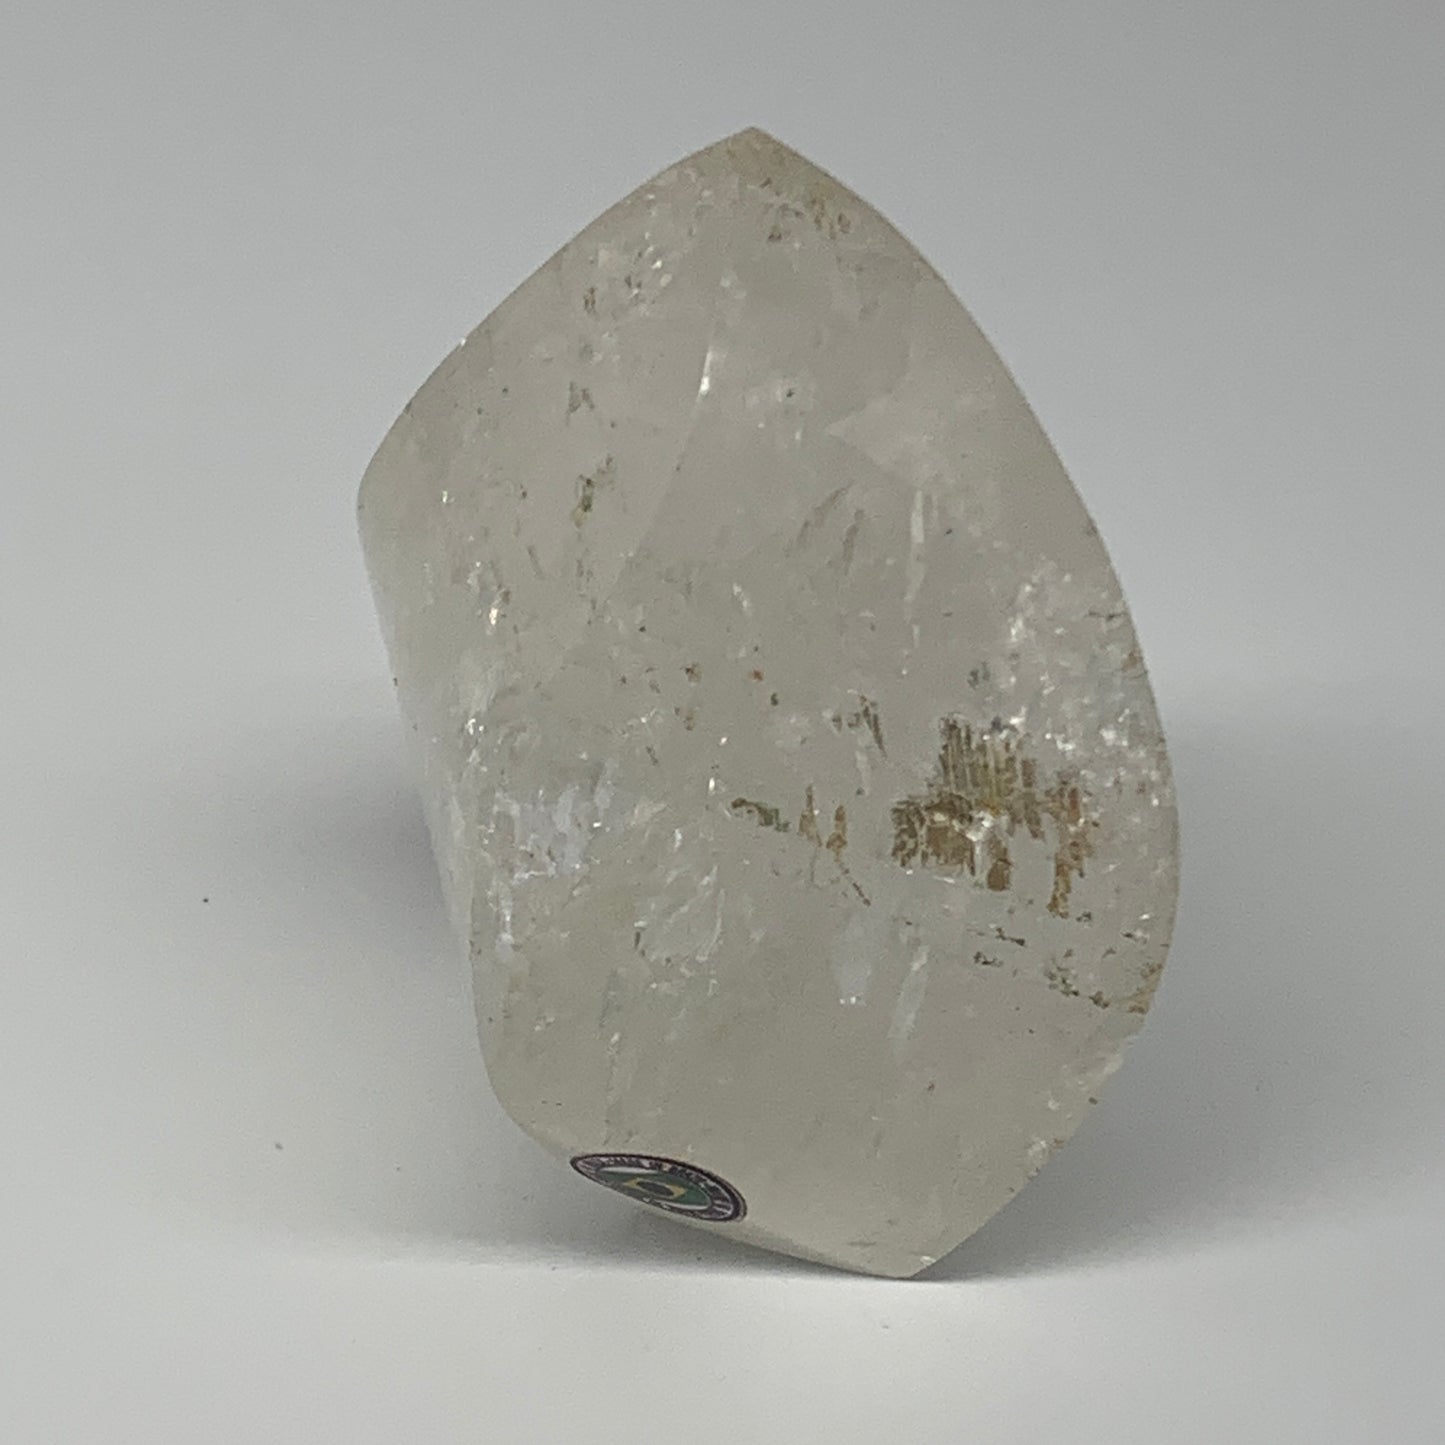 478.3g, 3.6"x3"x2.3", Natural Quartz Flame Polished Crystal @Brazil, B19145